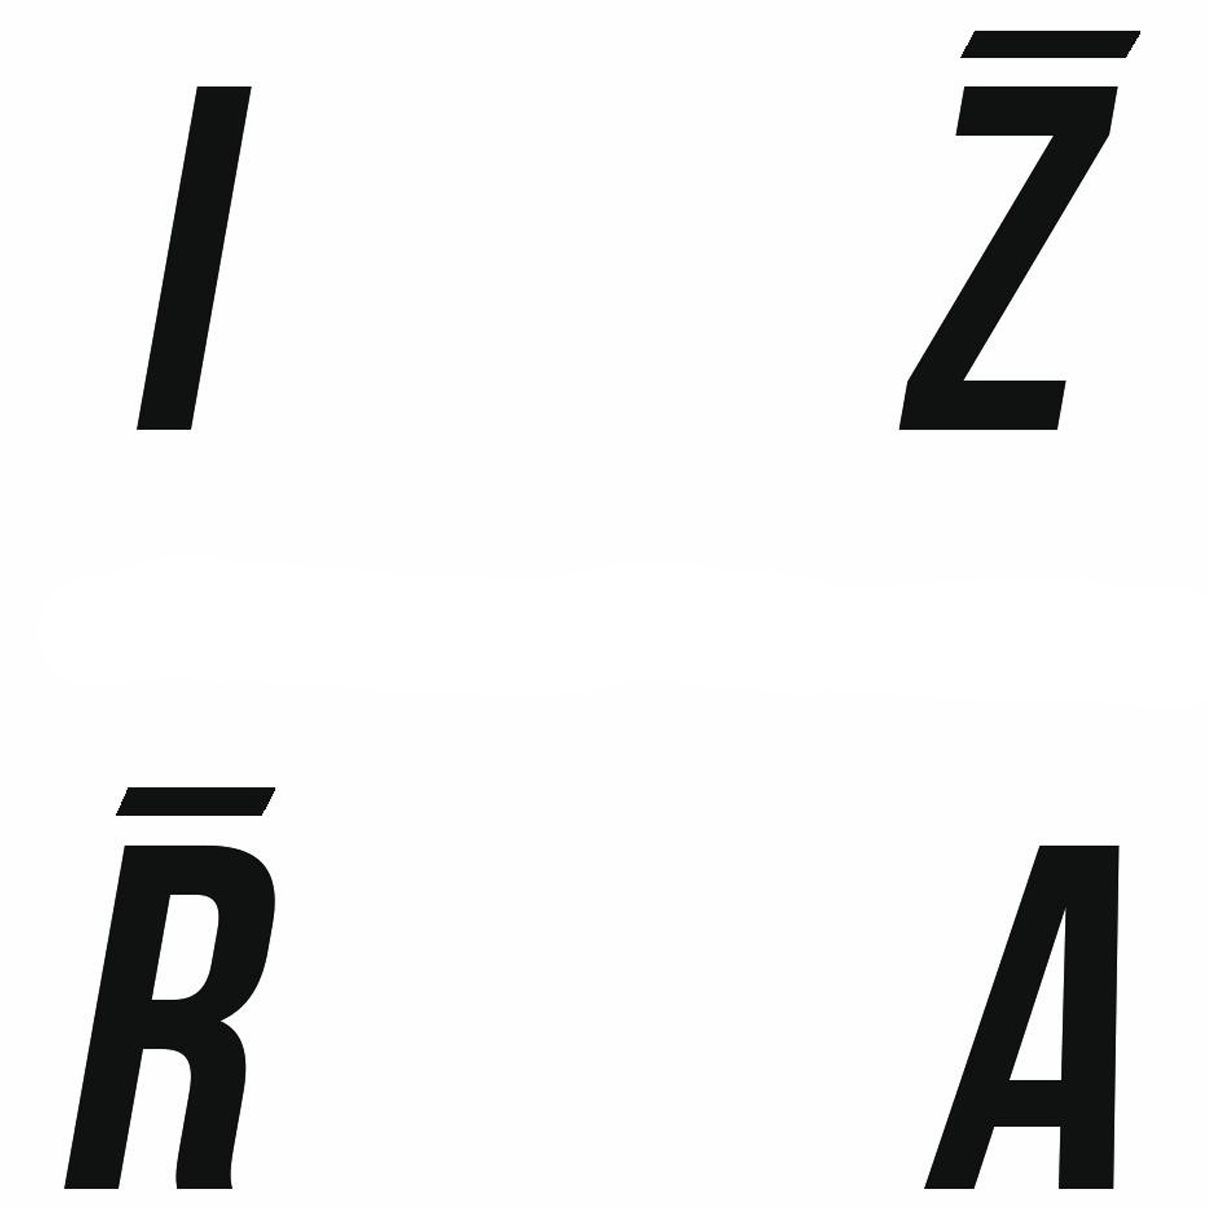 IZRA - RESILIENCE & PURPOSE